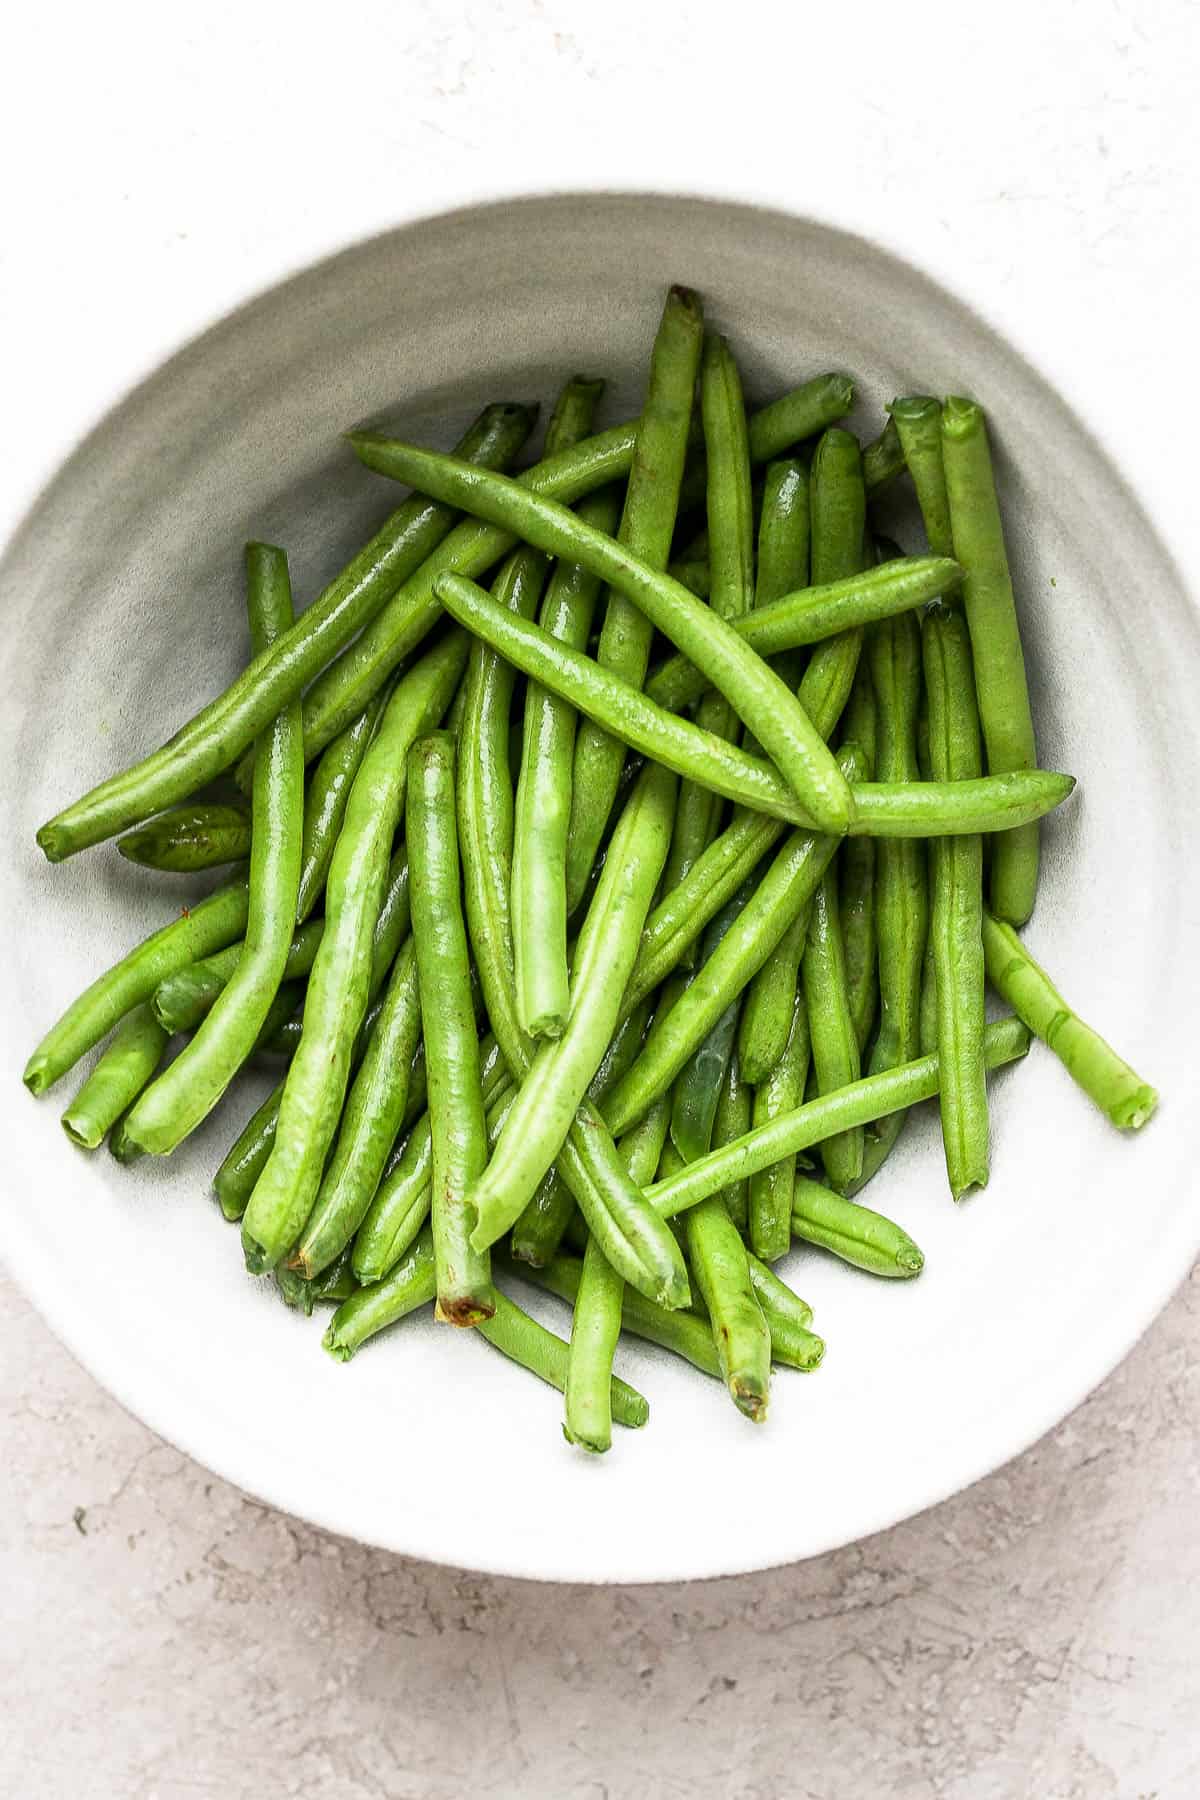 Plain green beans in a white bowl.